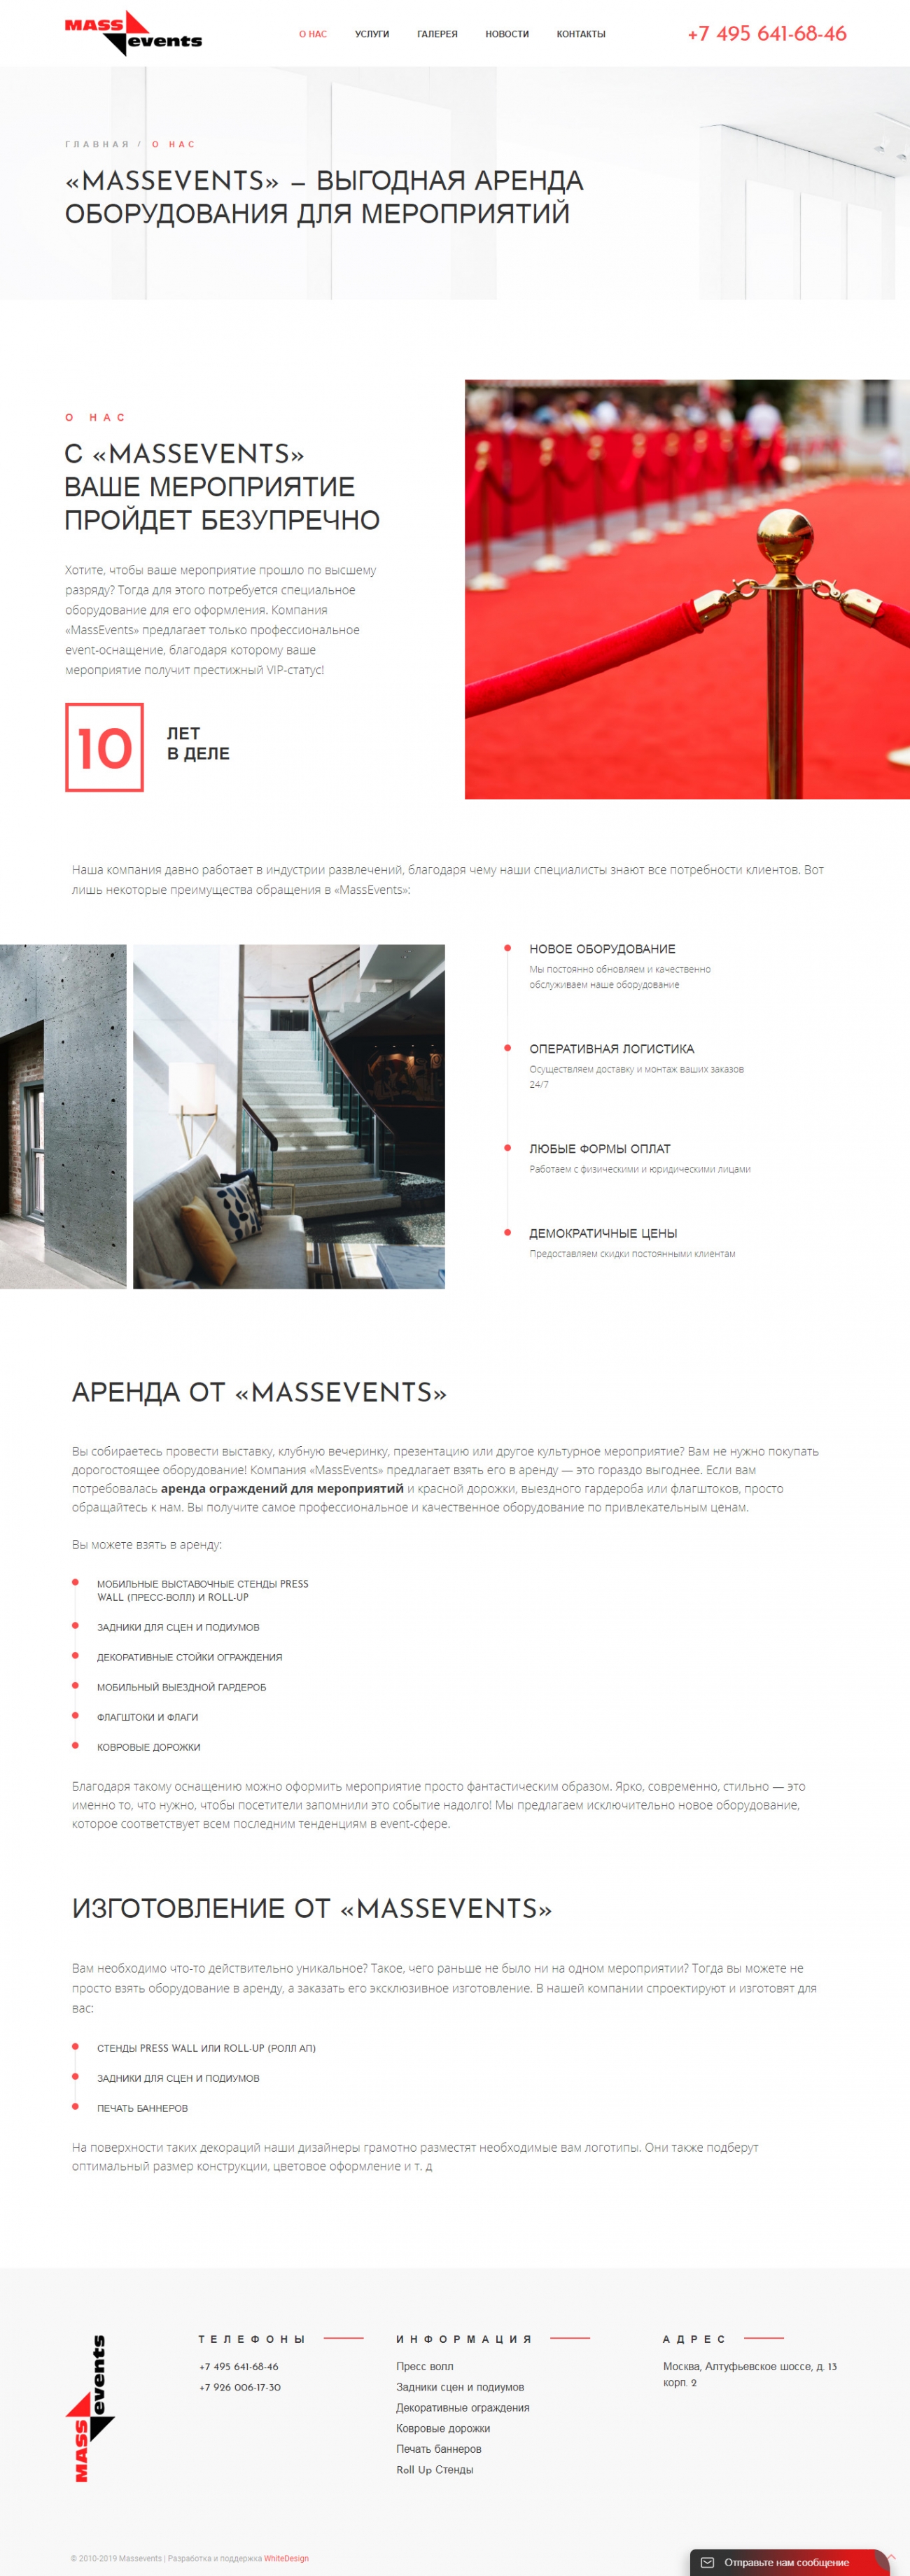 Внешний вид страницы портфолио сайта компании Massevents